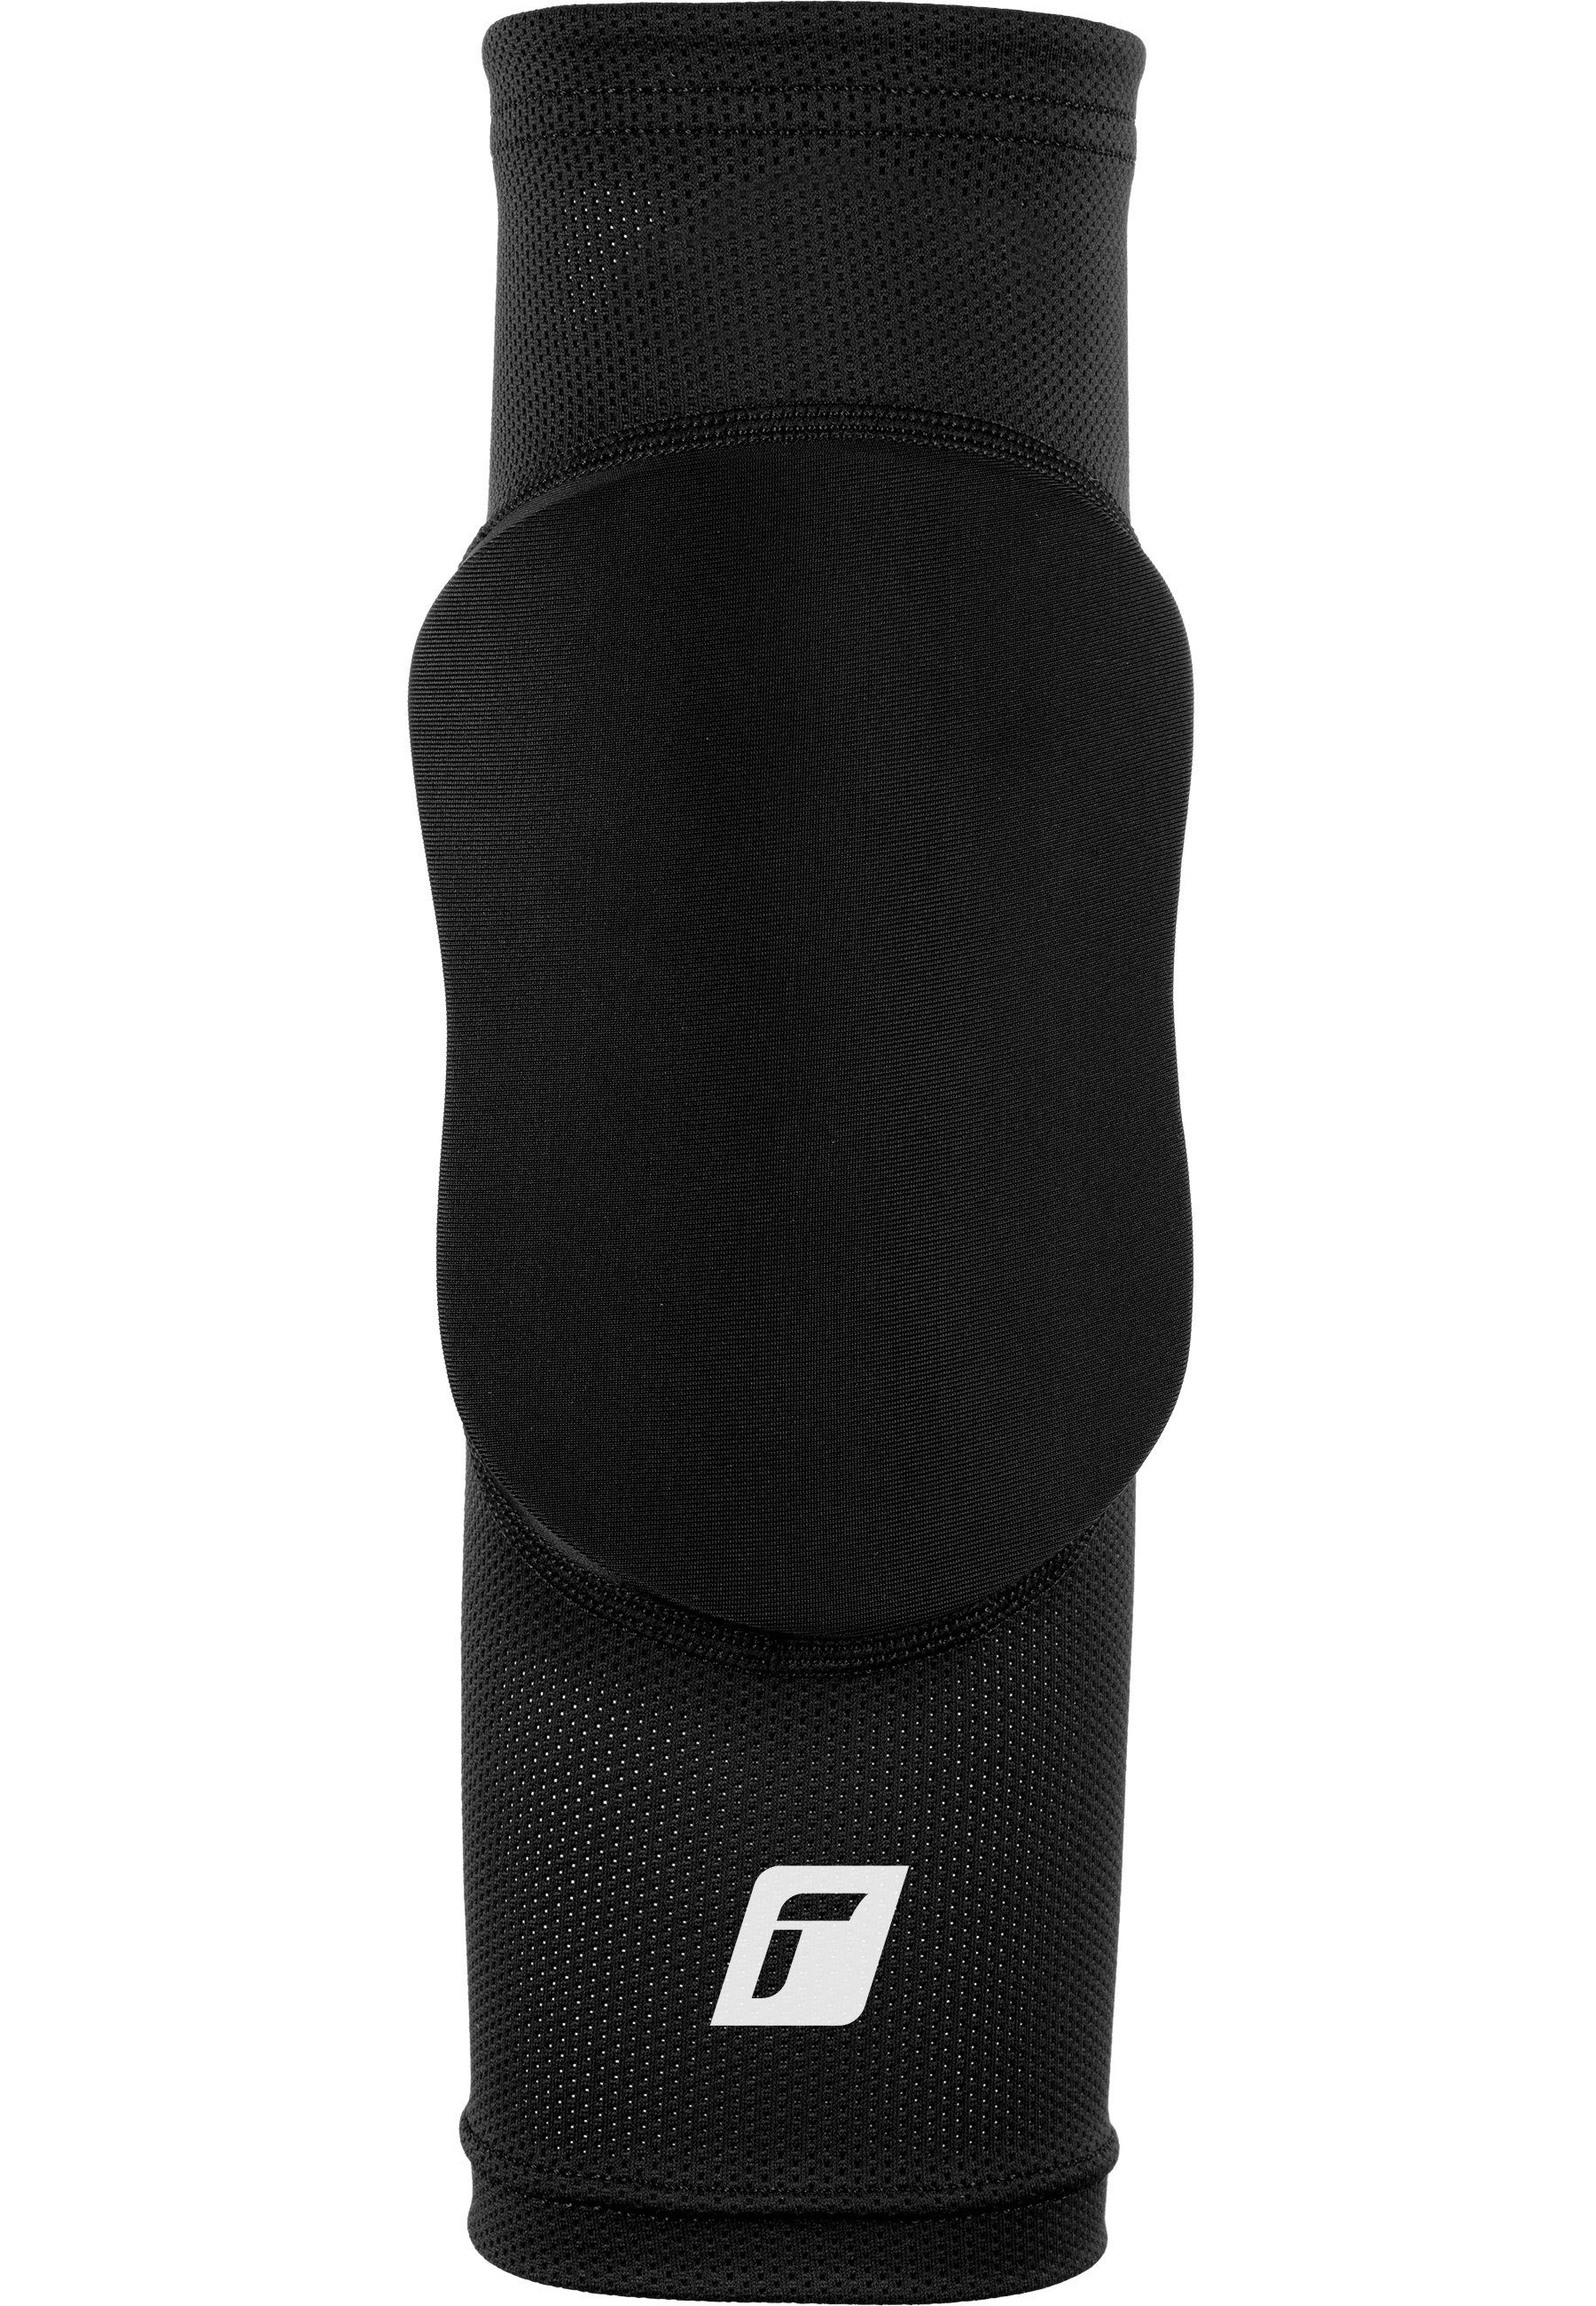 Reusch Knieprotektor Knee Protector Sleeve, für optimale Bewegungsfreiheit | Skateprotektoren